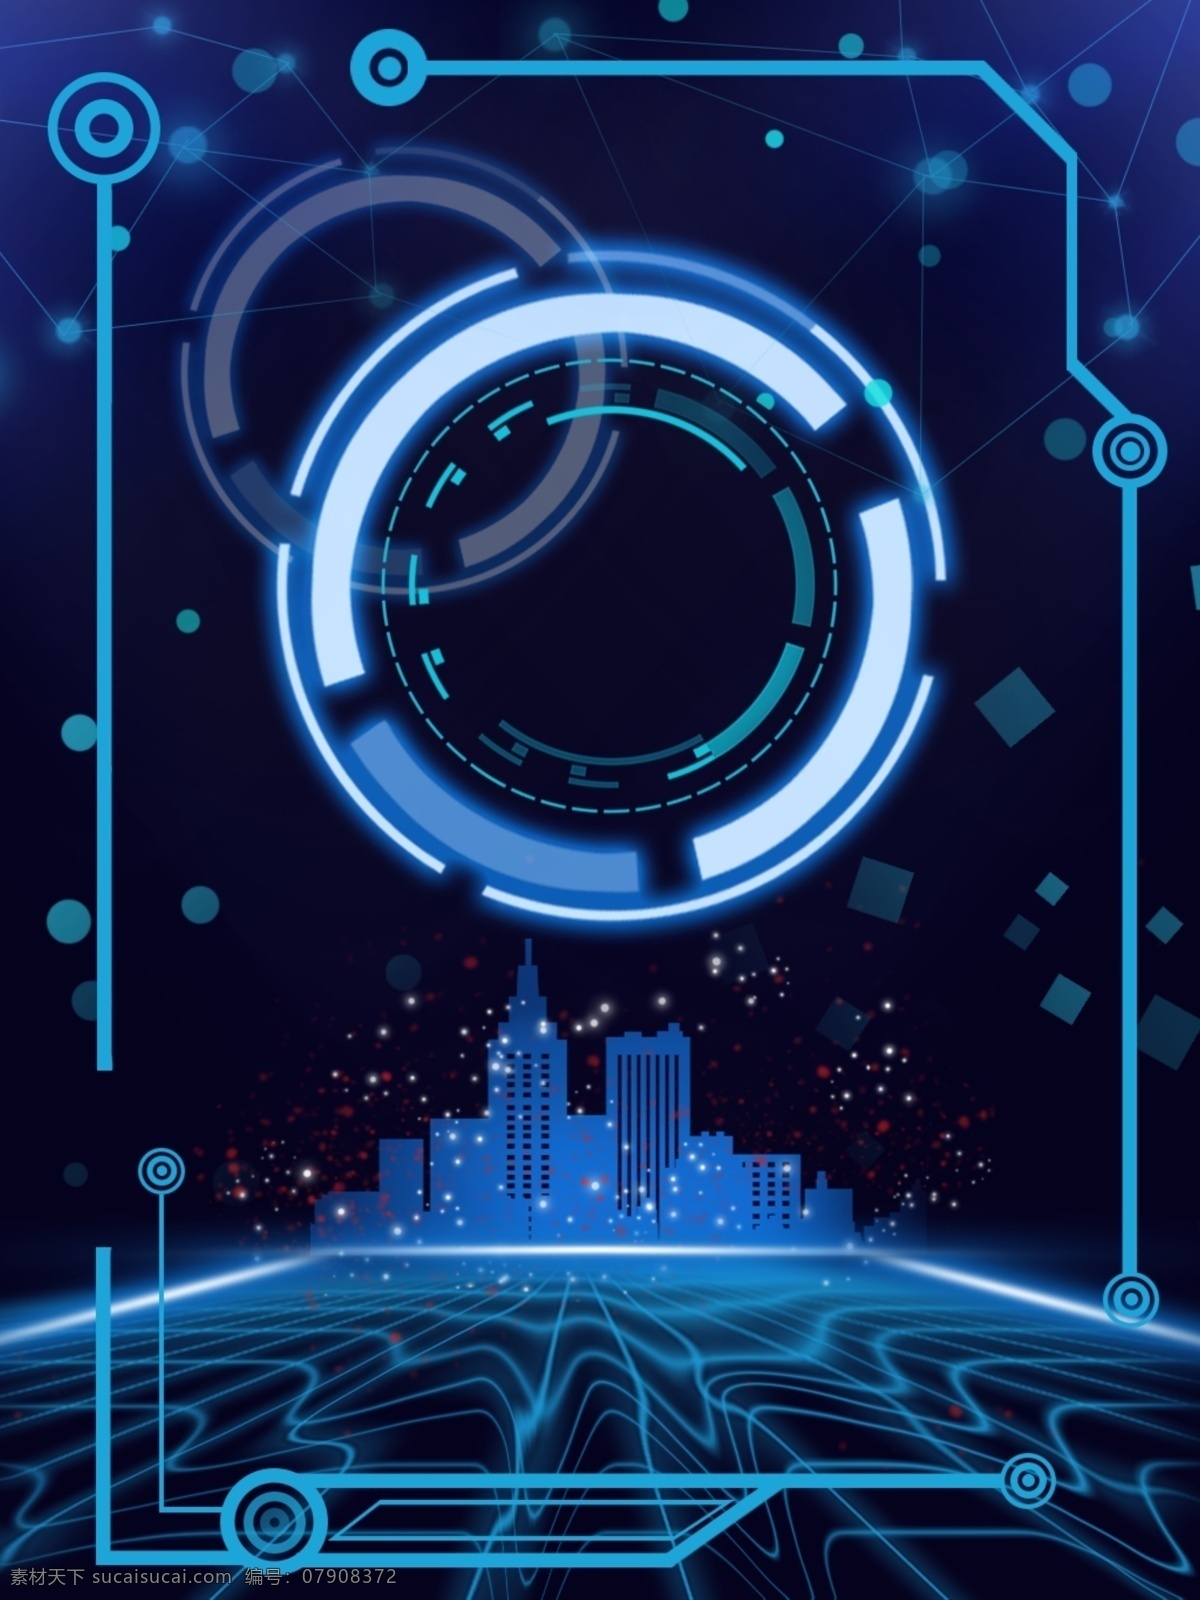 原创 炫 酷 智能 科技 城市 背景 炫酷 蓝色 圆 网格